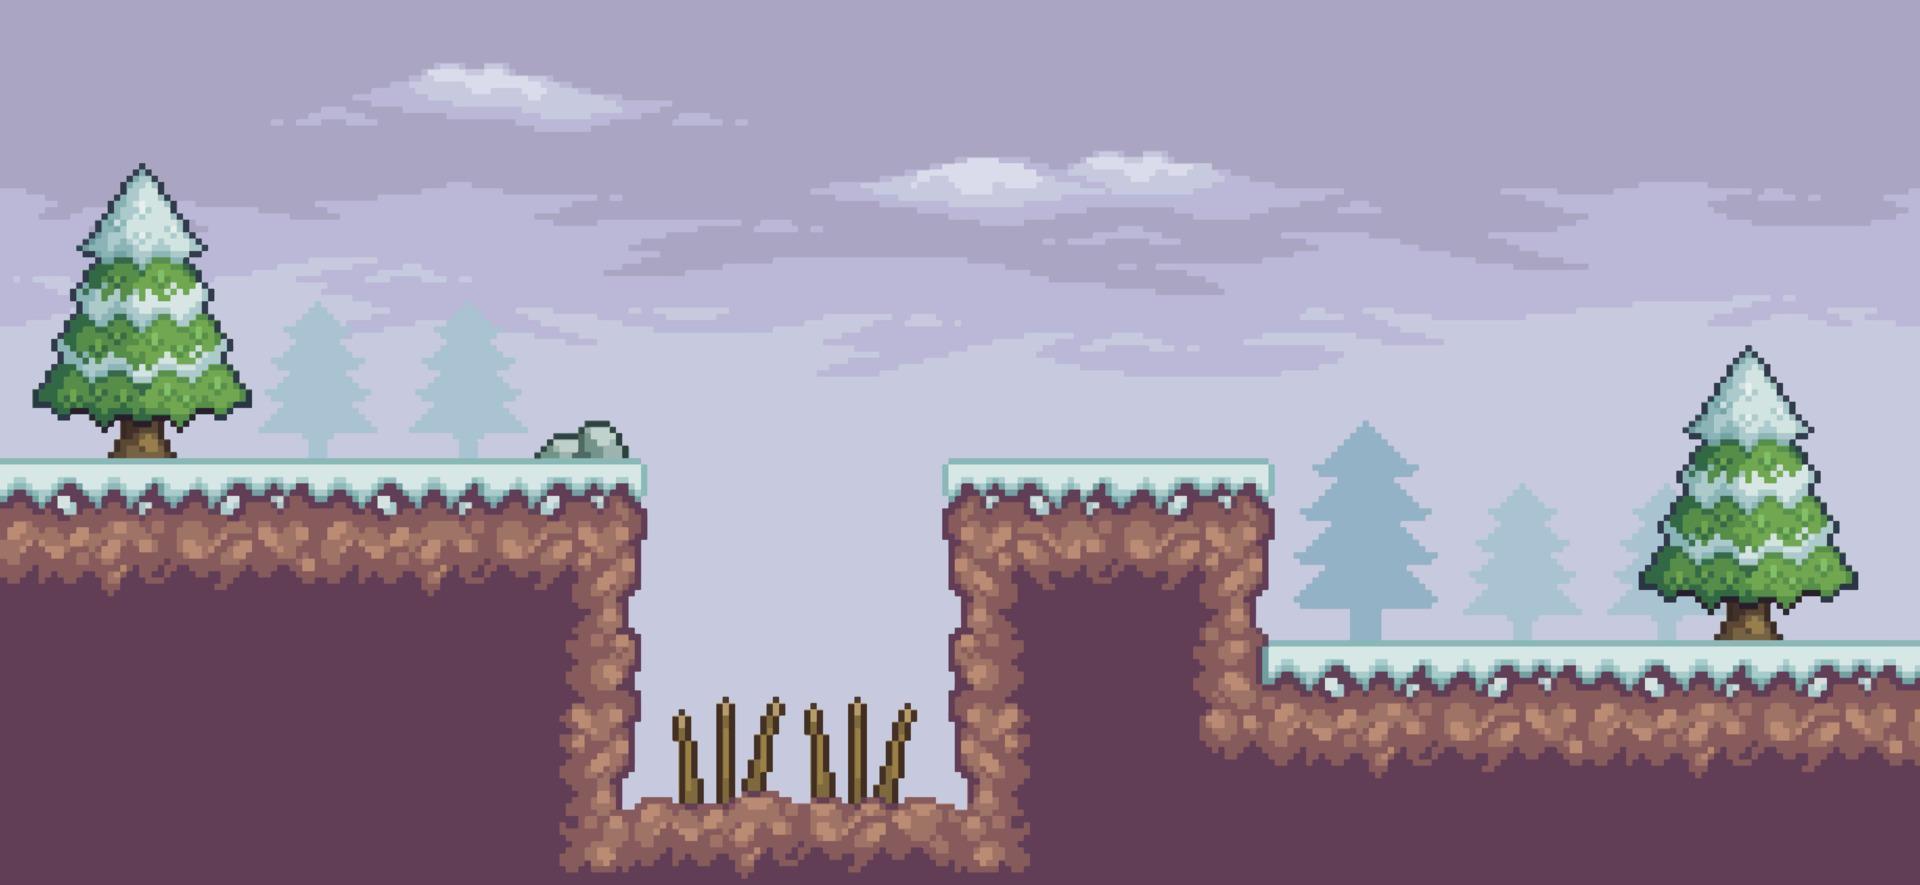 scena di gioco pixel art nella neve con alberi di pino, trappola e nuvole sfondo a 8 bit vettore